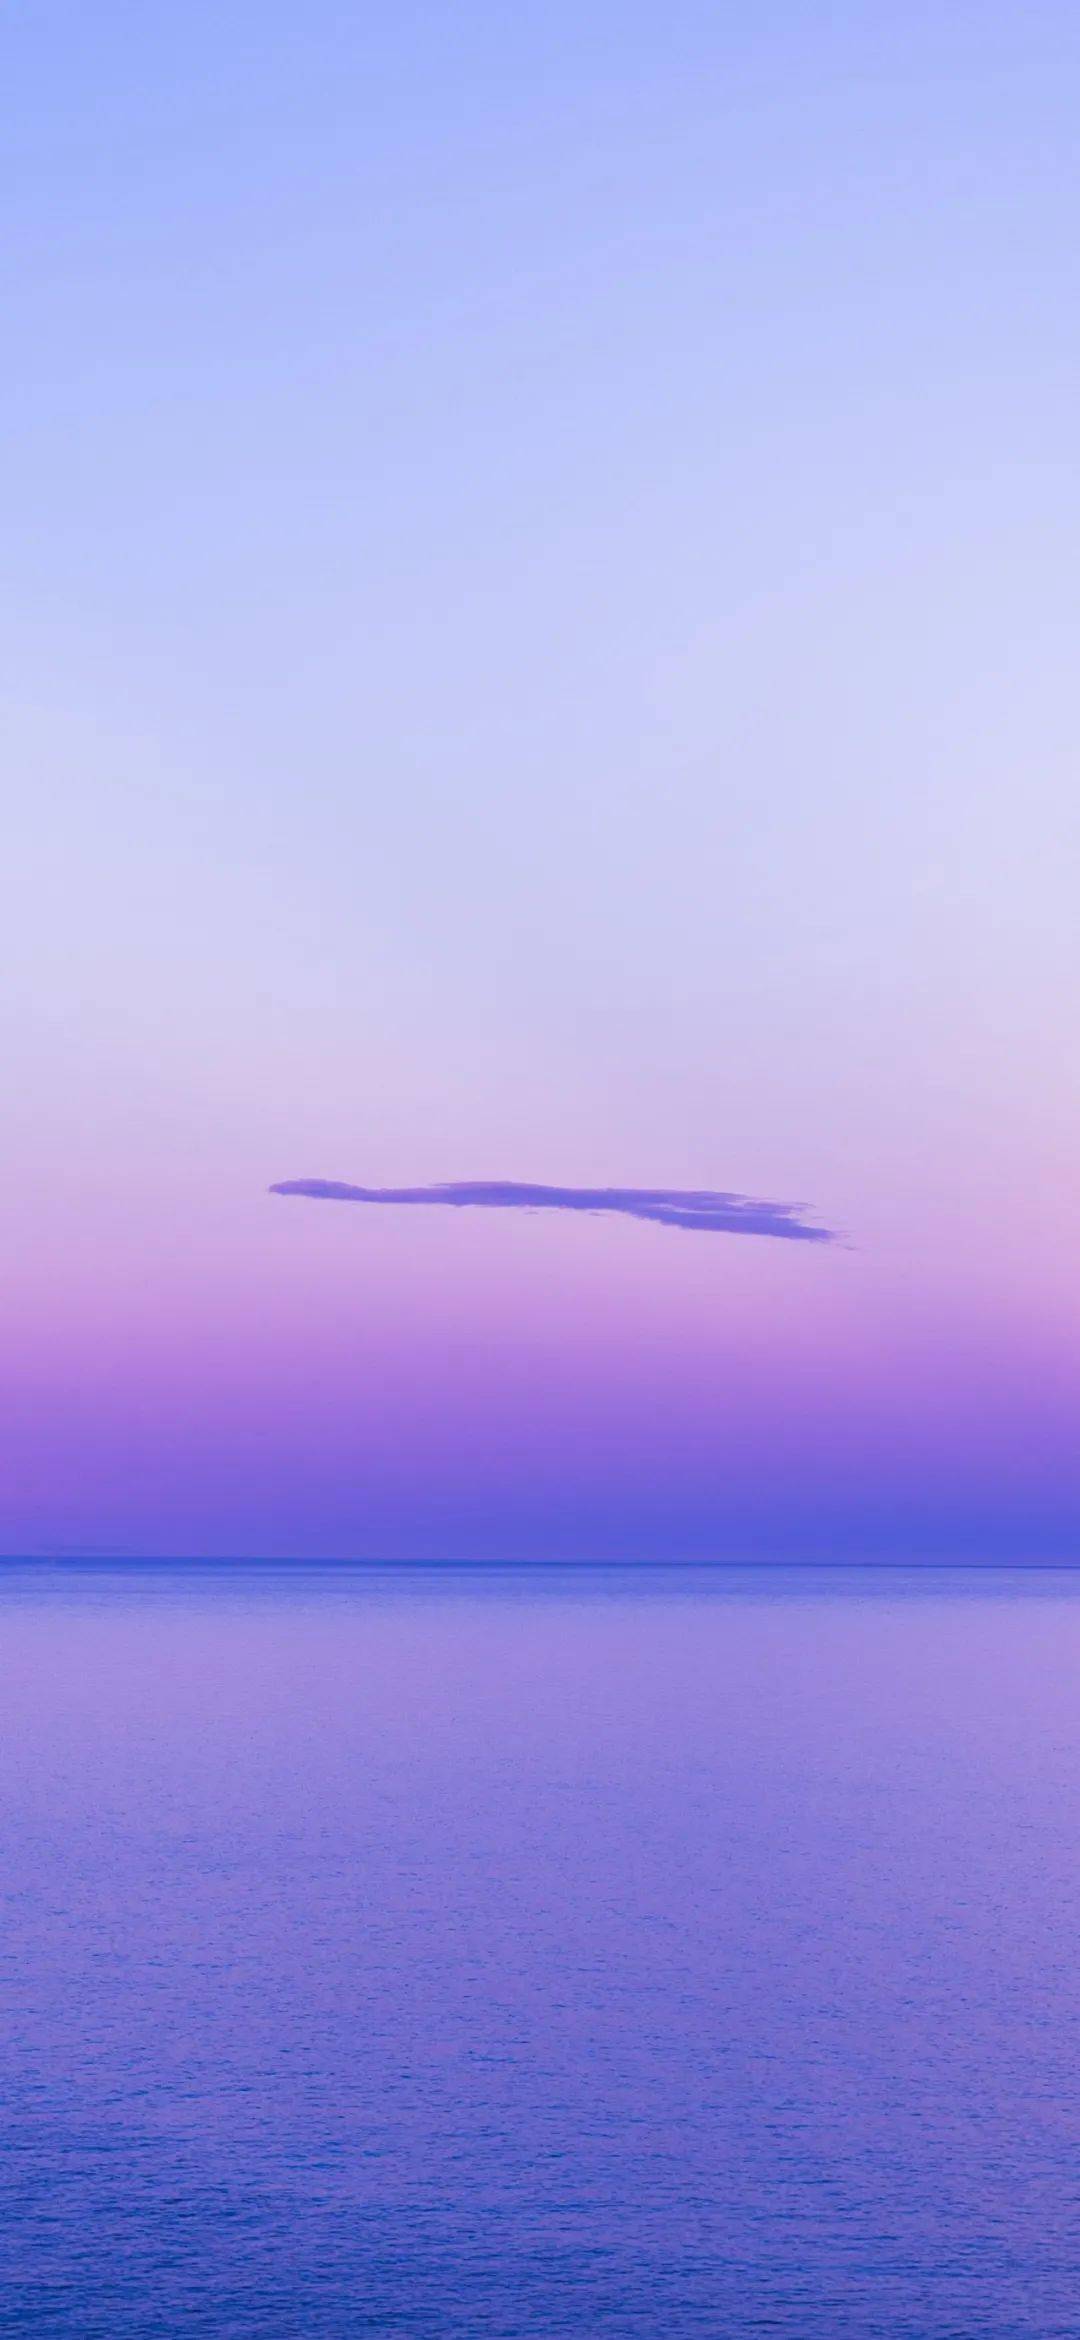 抖音里最火的潮图紫色图片